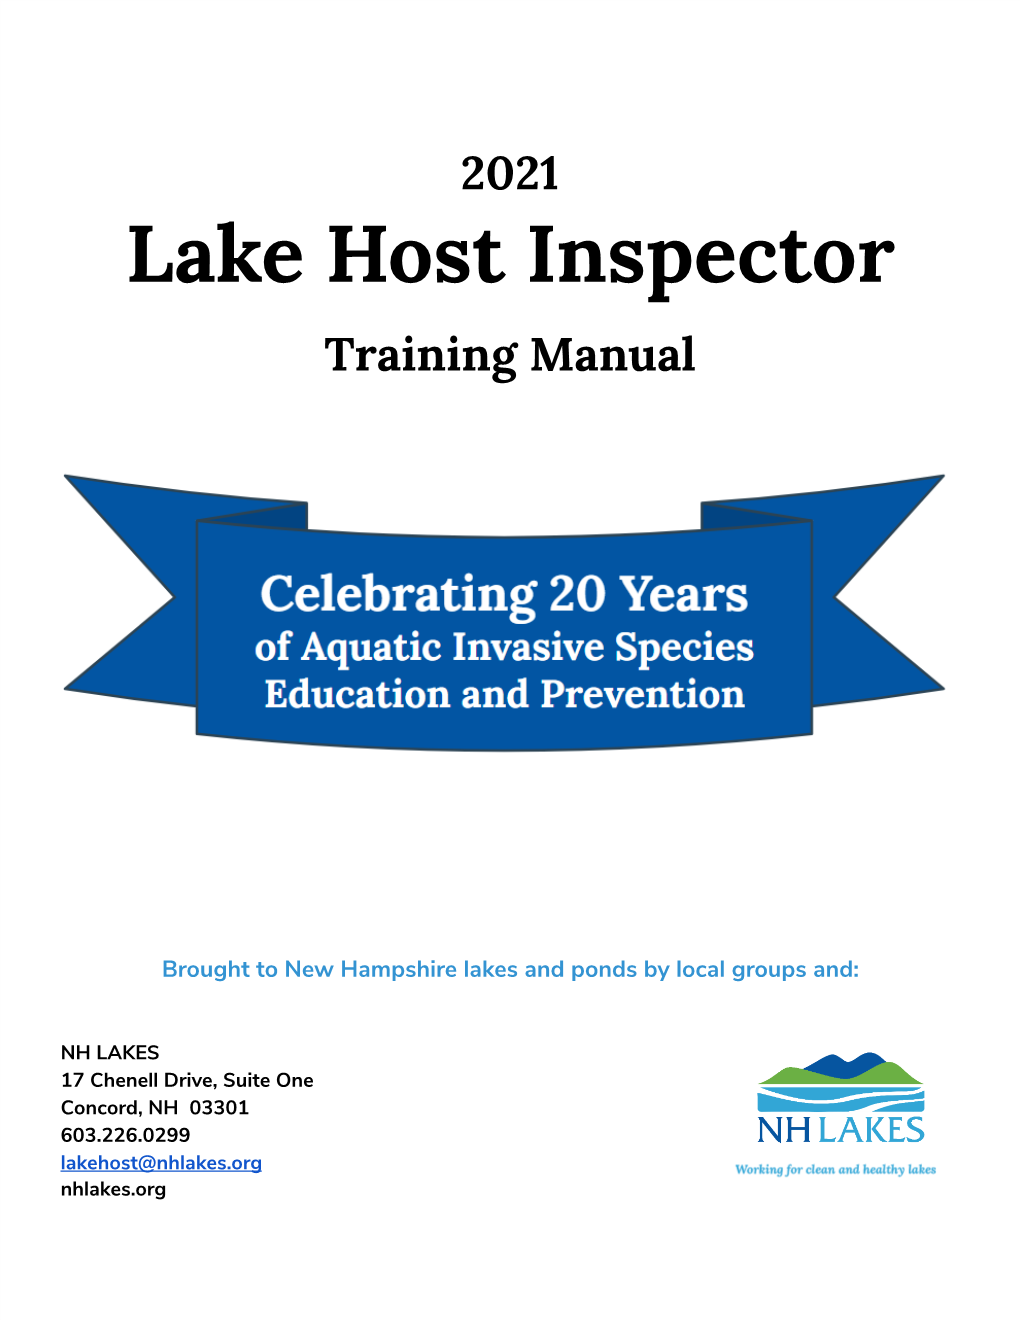 Lake Host Inspector